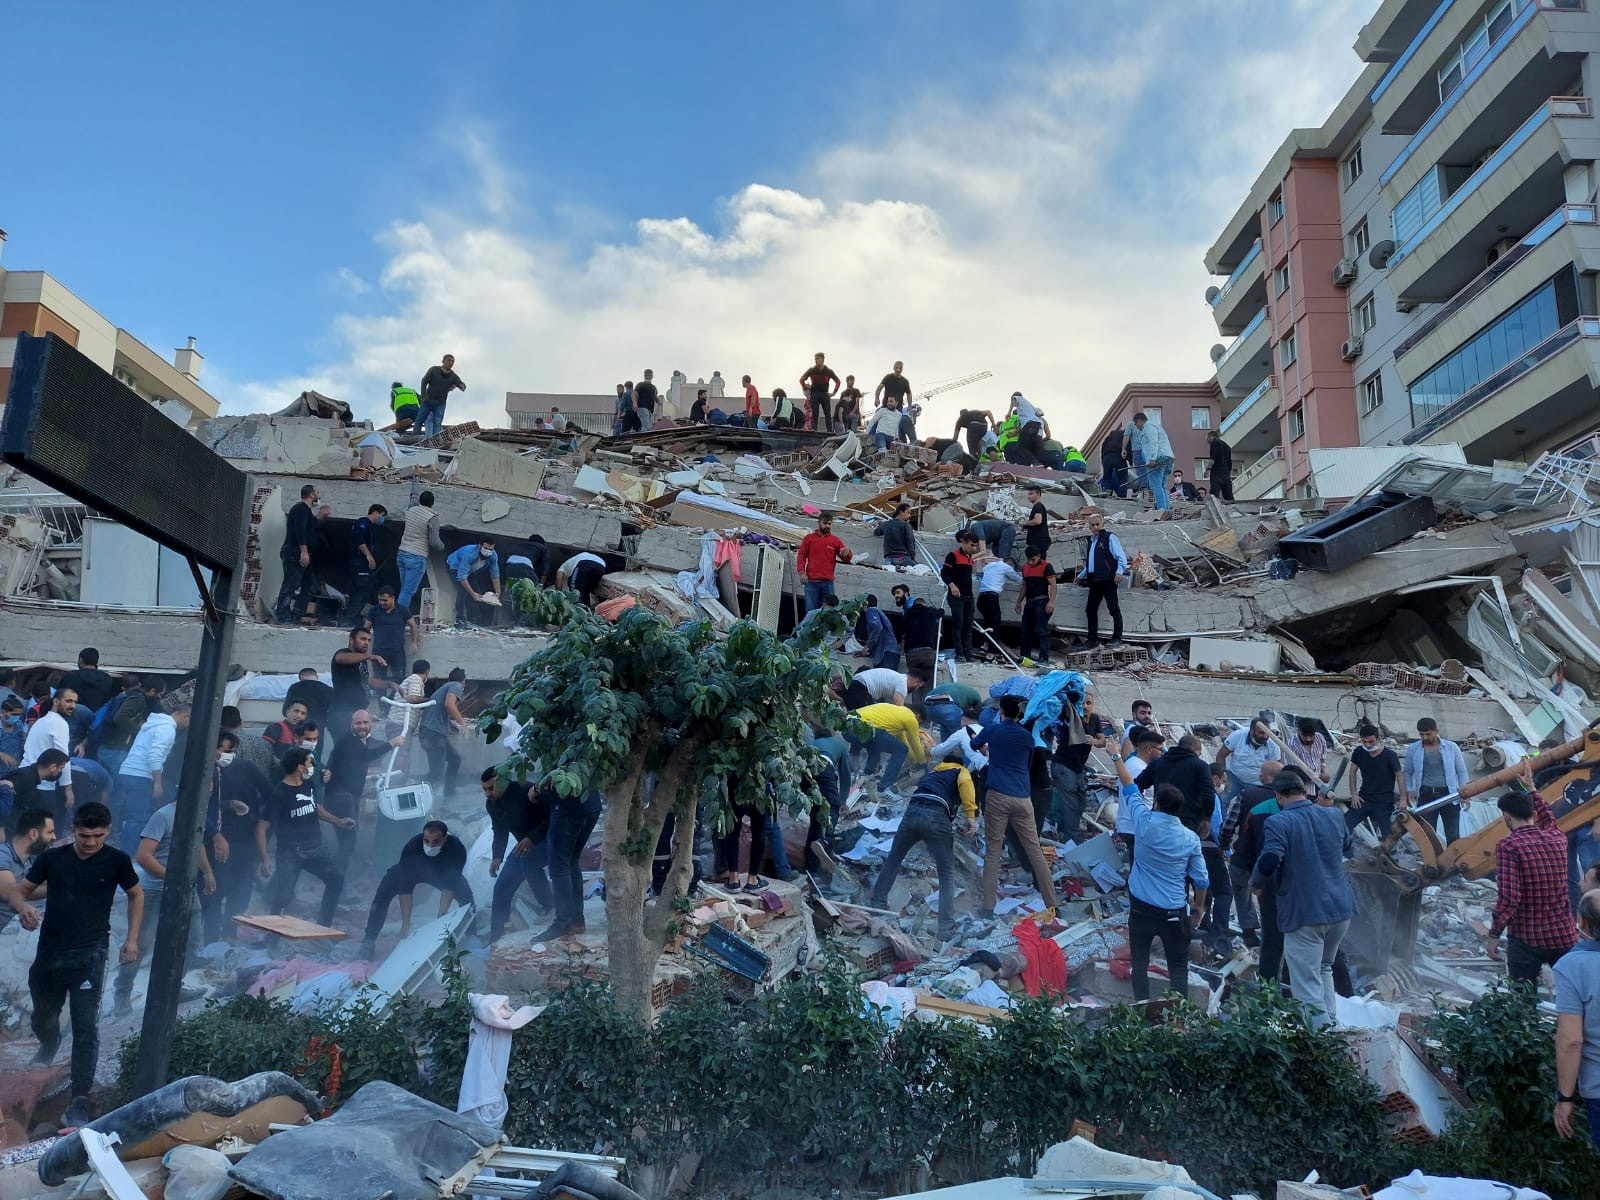 ชาวบ้านและเจ้าหน้าที่ช่วยกันค้นหาผู้รอดชีวิต ในเมืองอิซมีร์ REUTERS/Tuncay Dersinlioglu